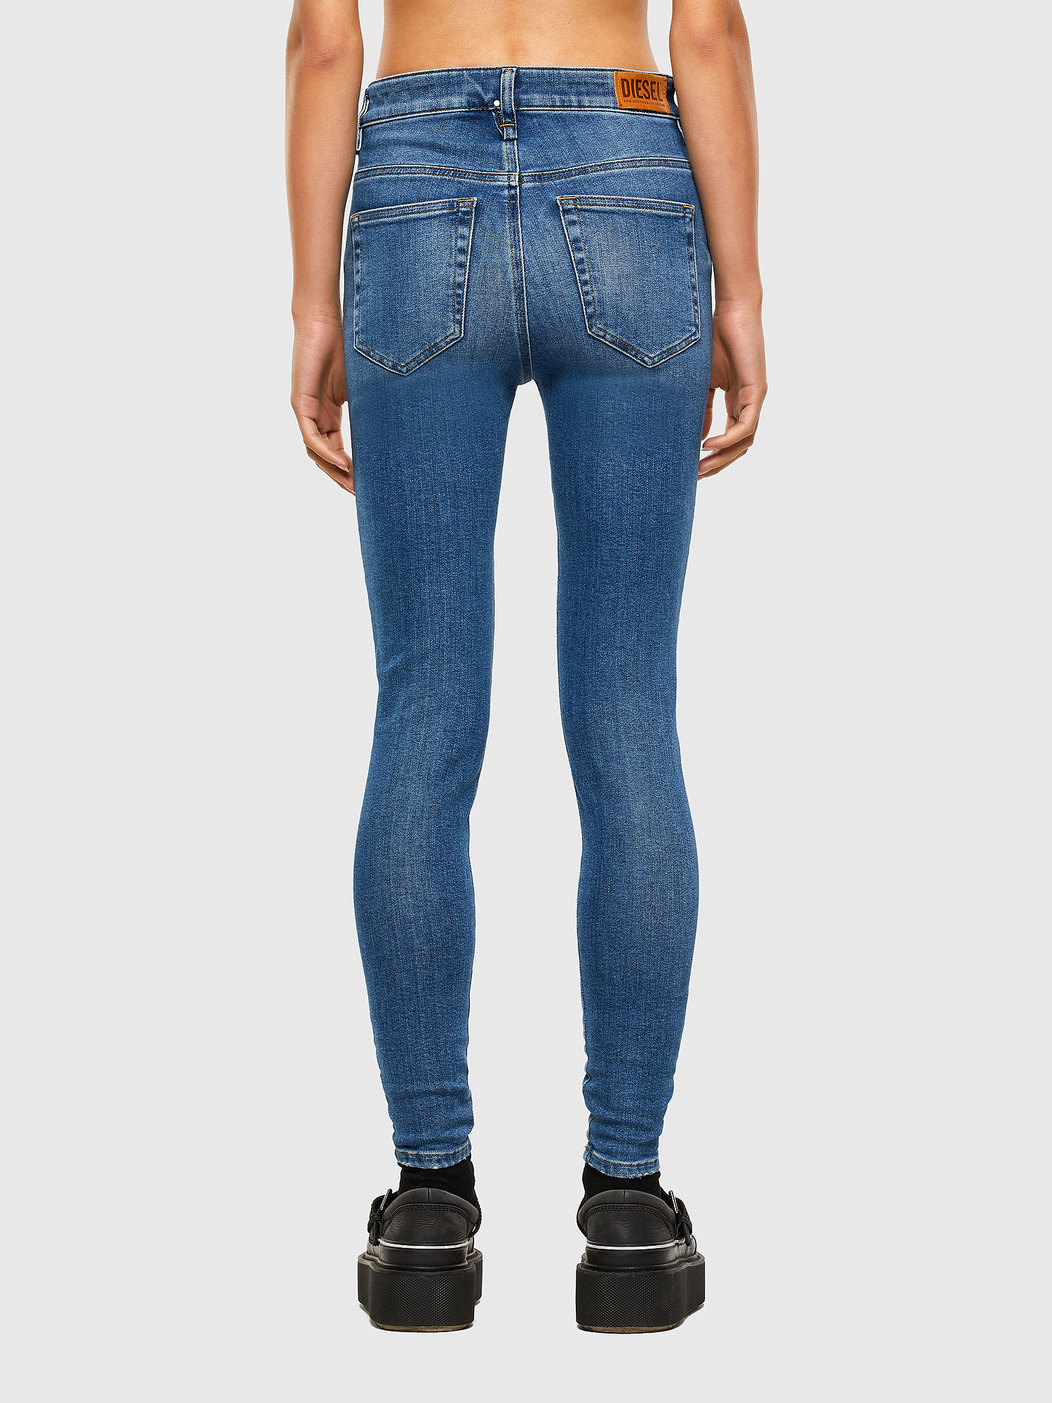 Super Skinny - Slandy High Jeans